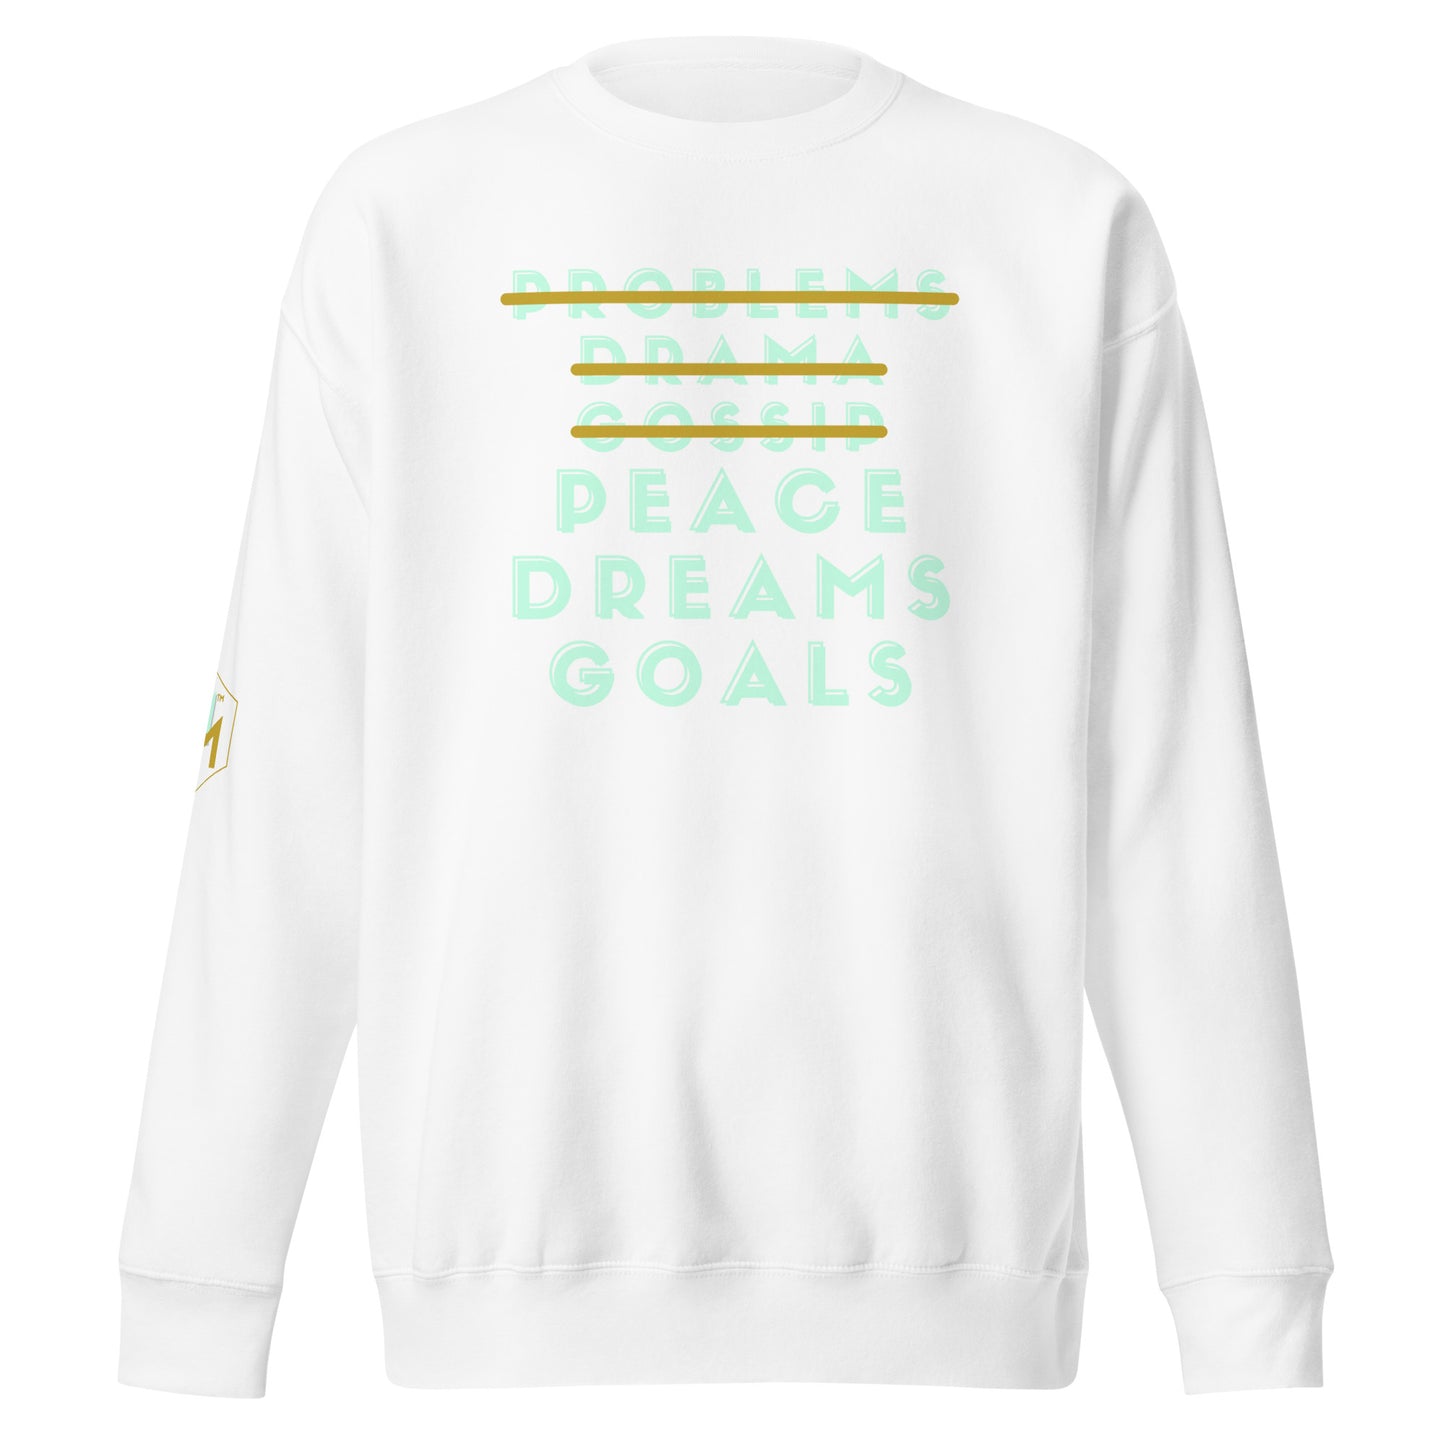 Peace Dreams Goals Sweatshirt - MINT gold text